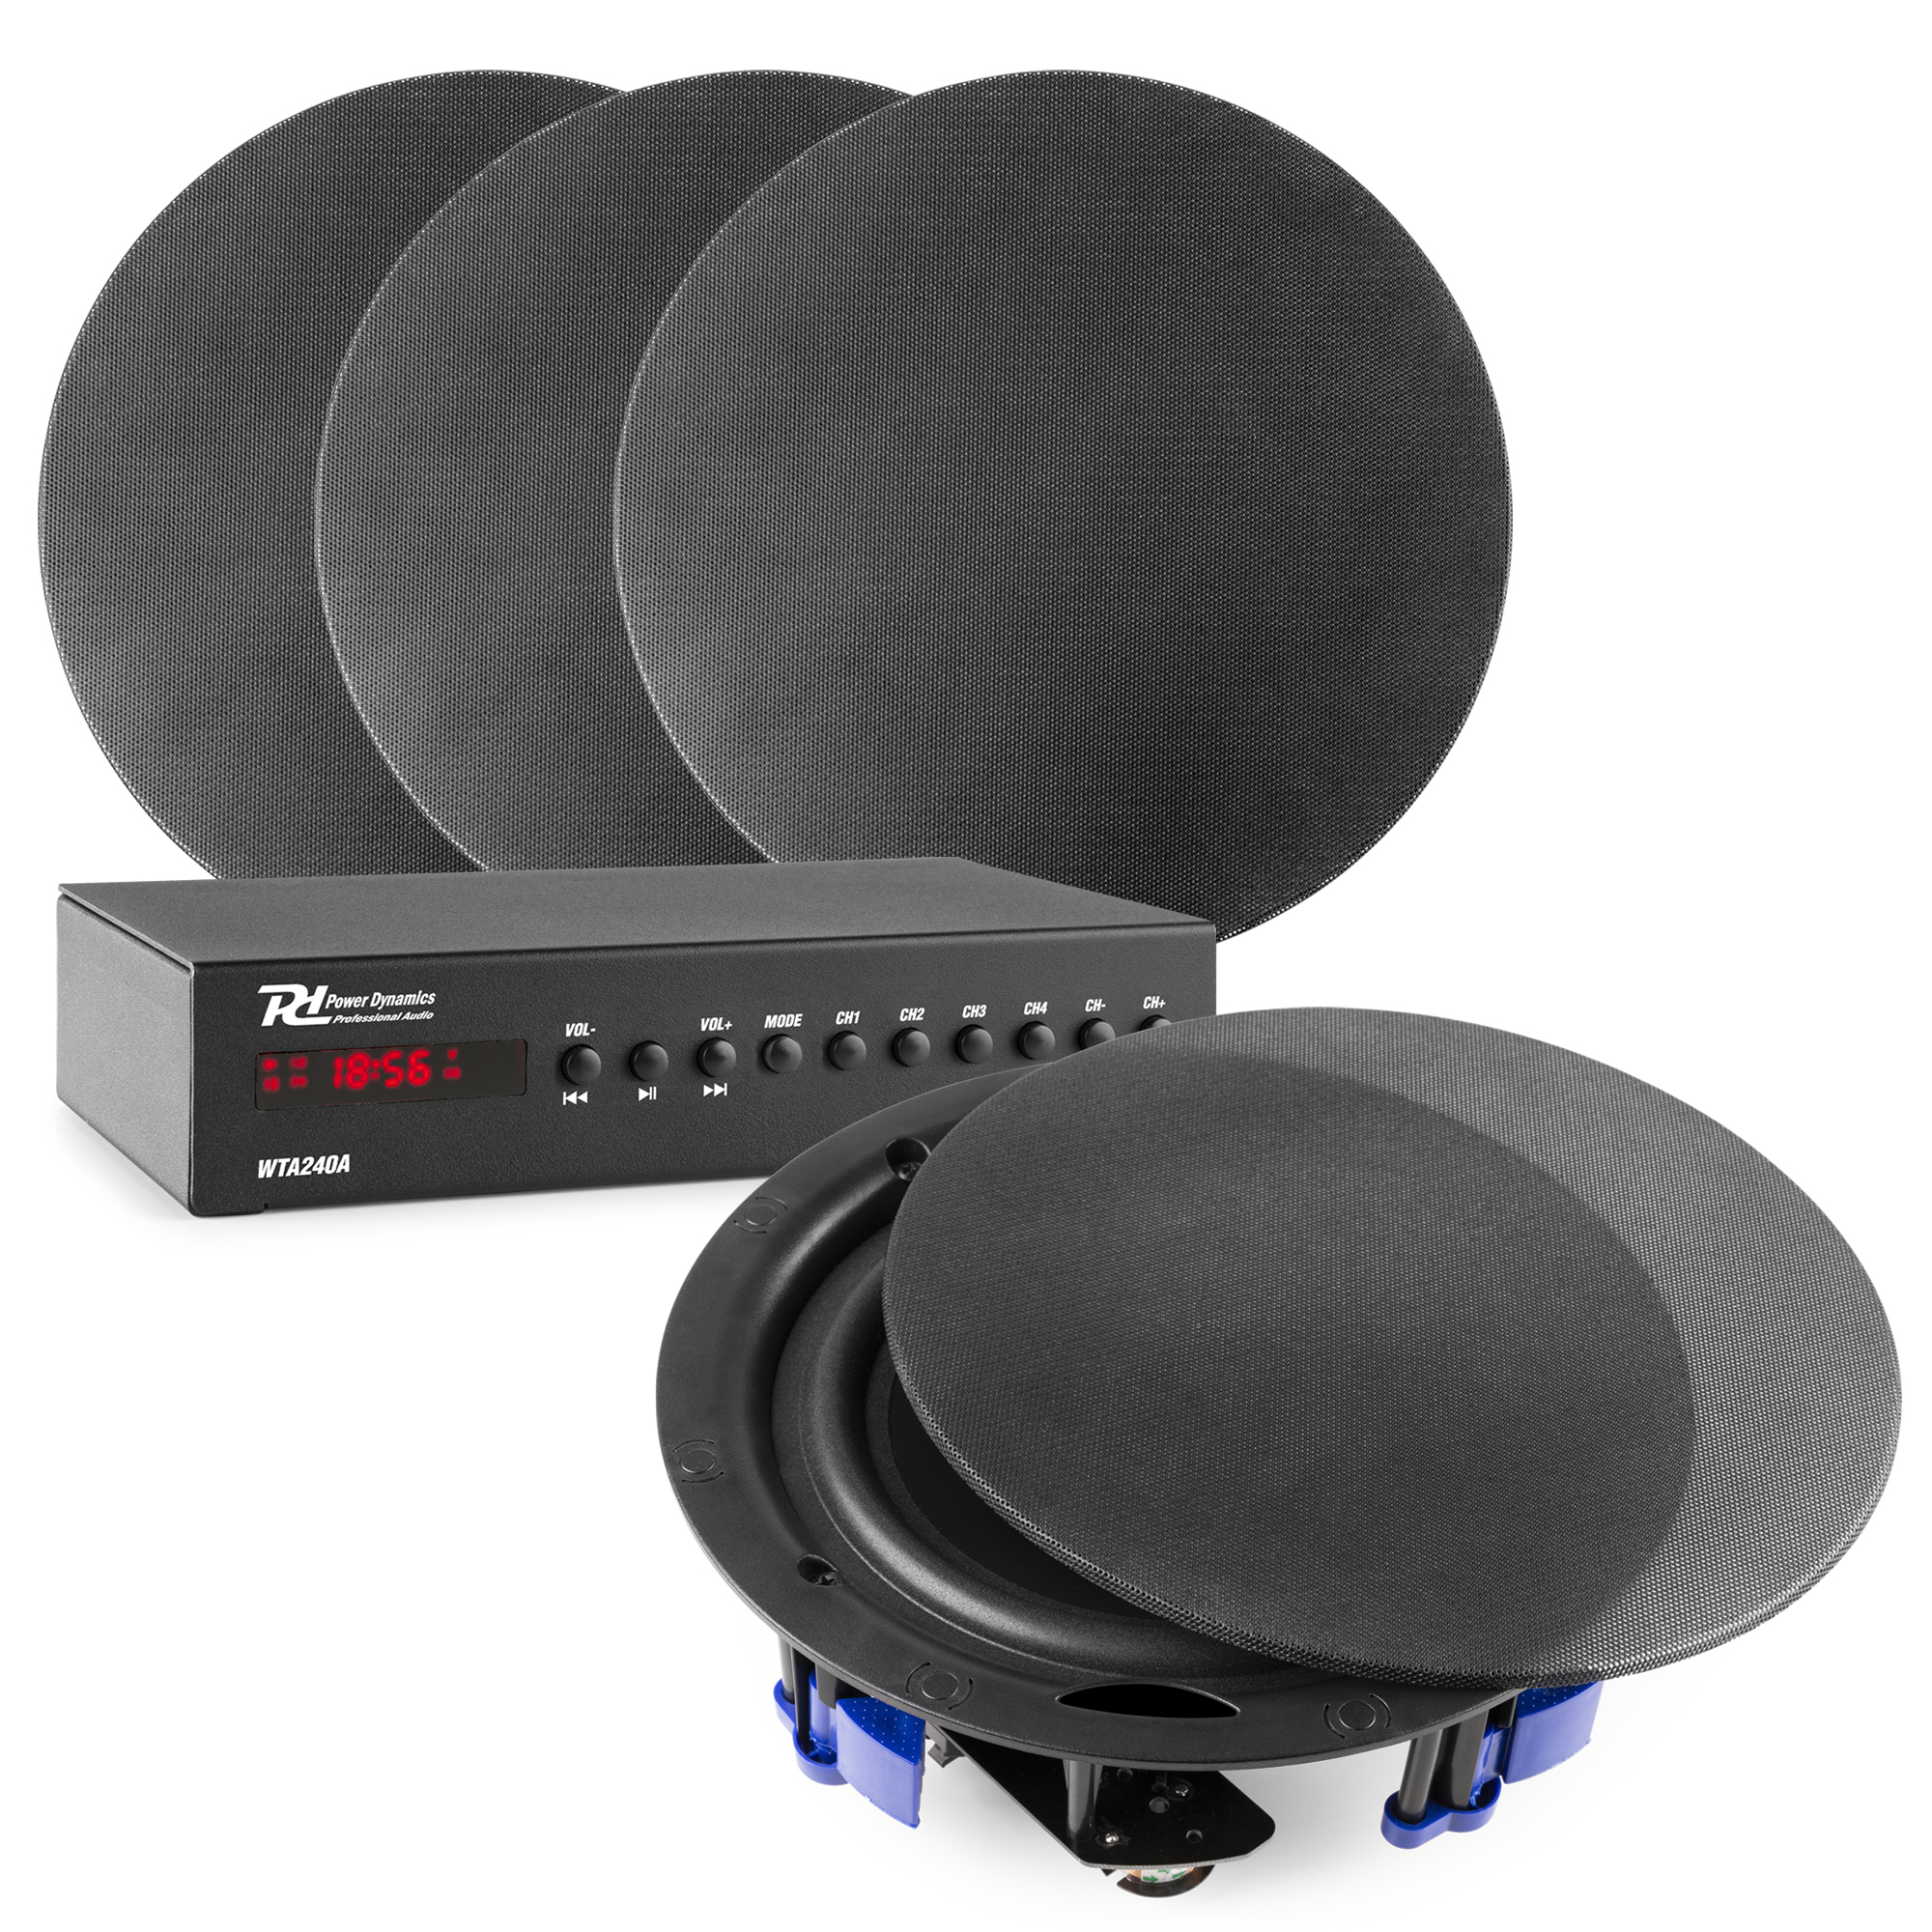 Power Dynamics Installatie speakerset met 4x low profile speakers -